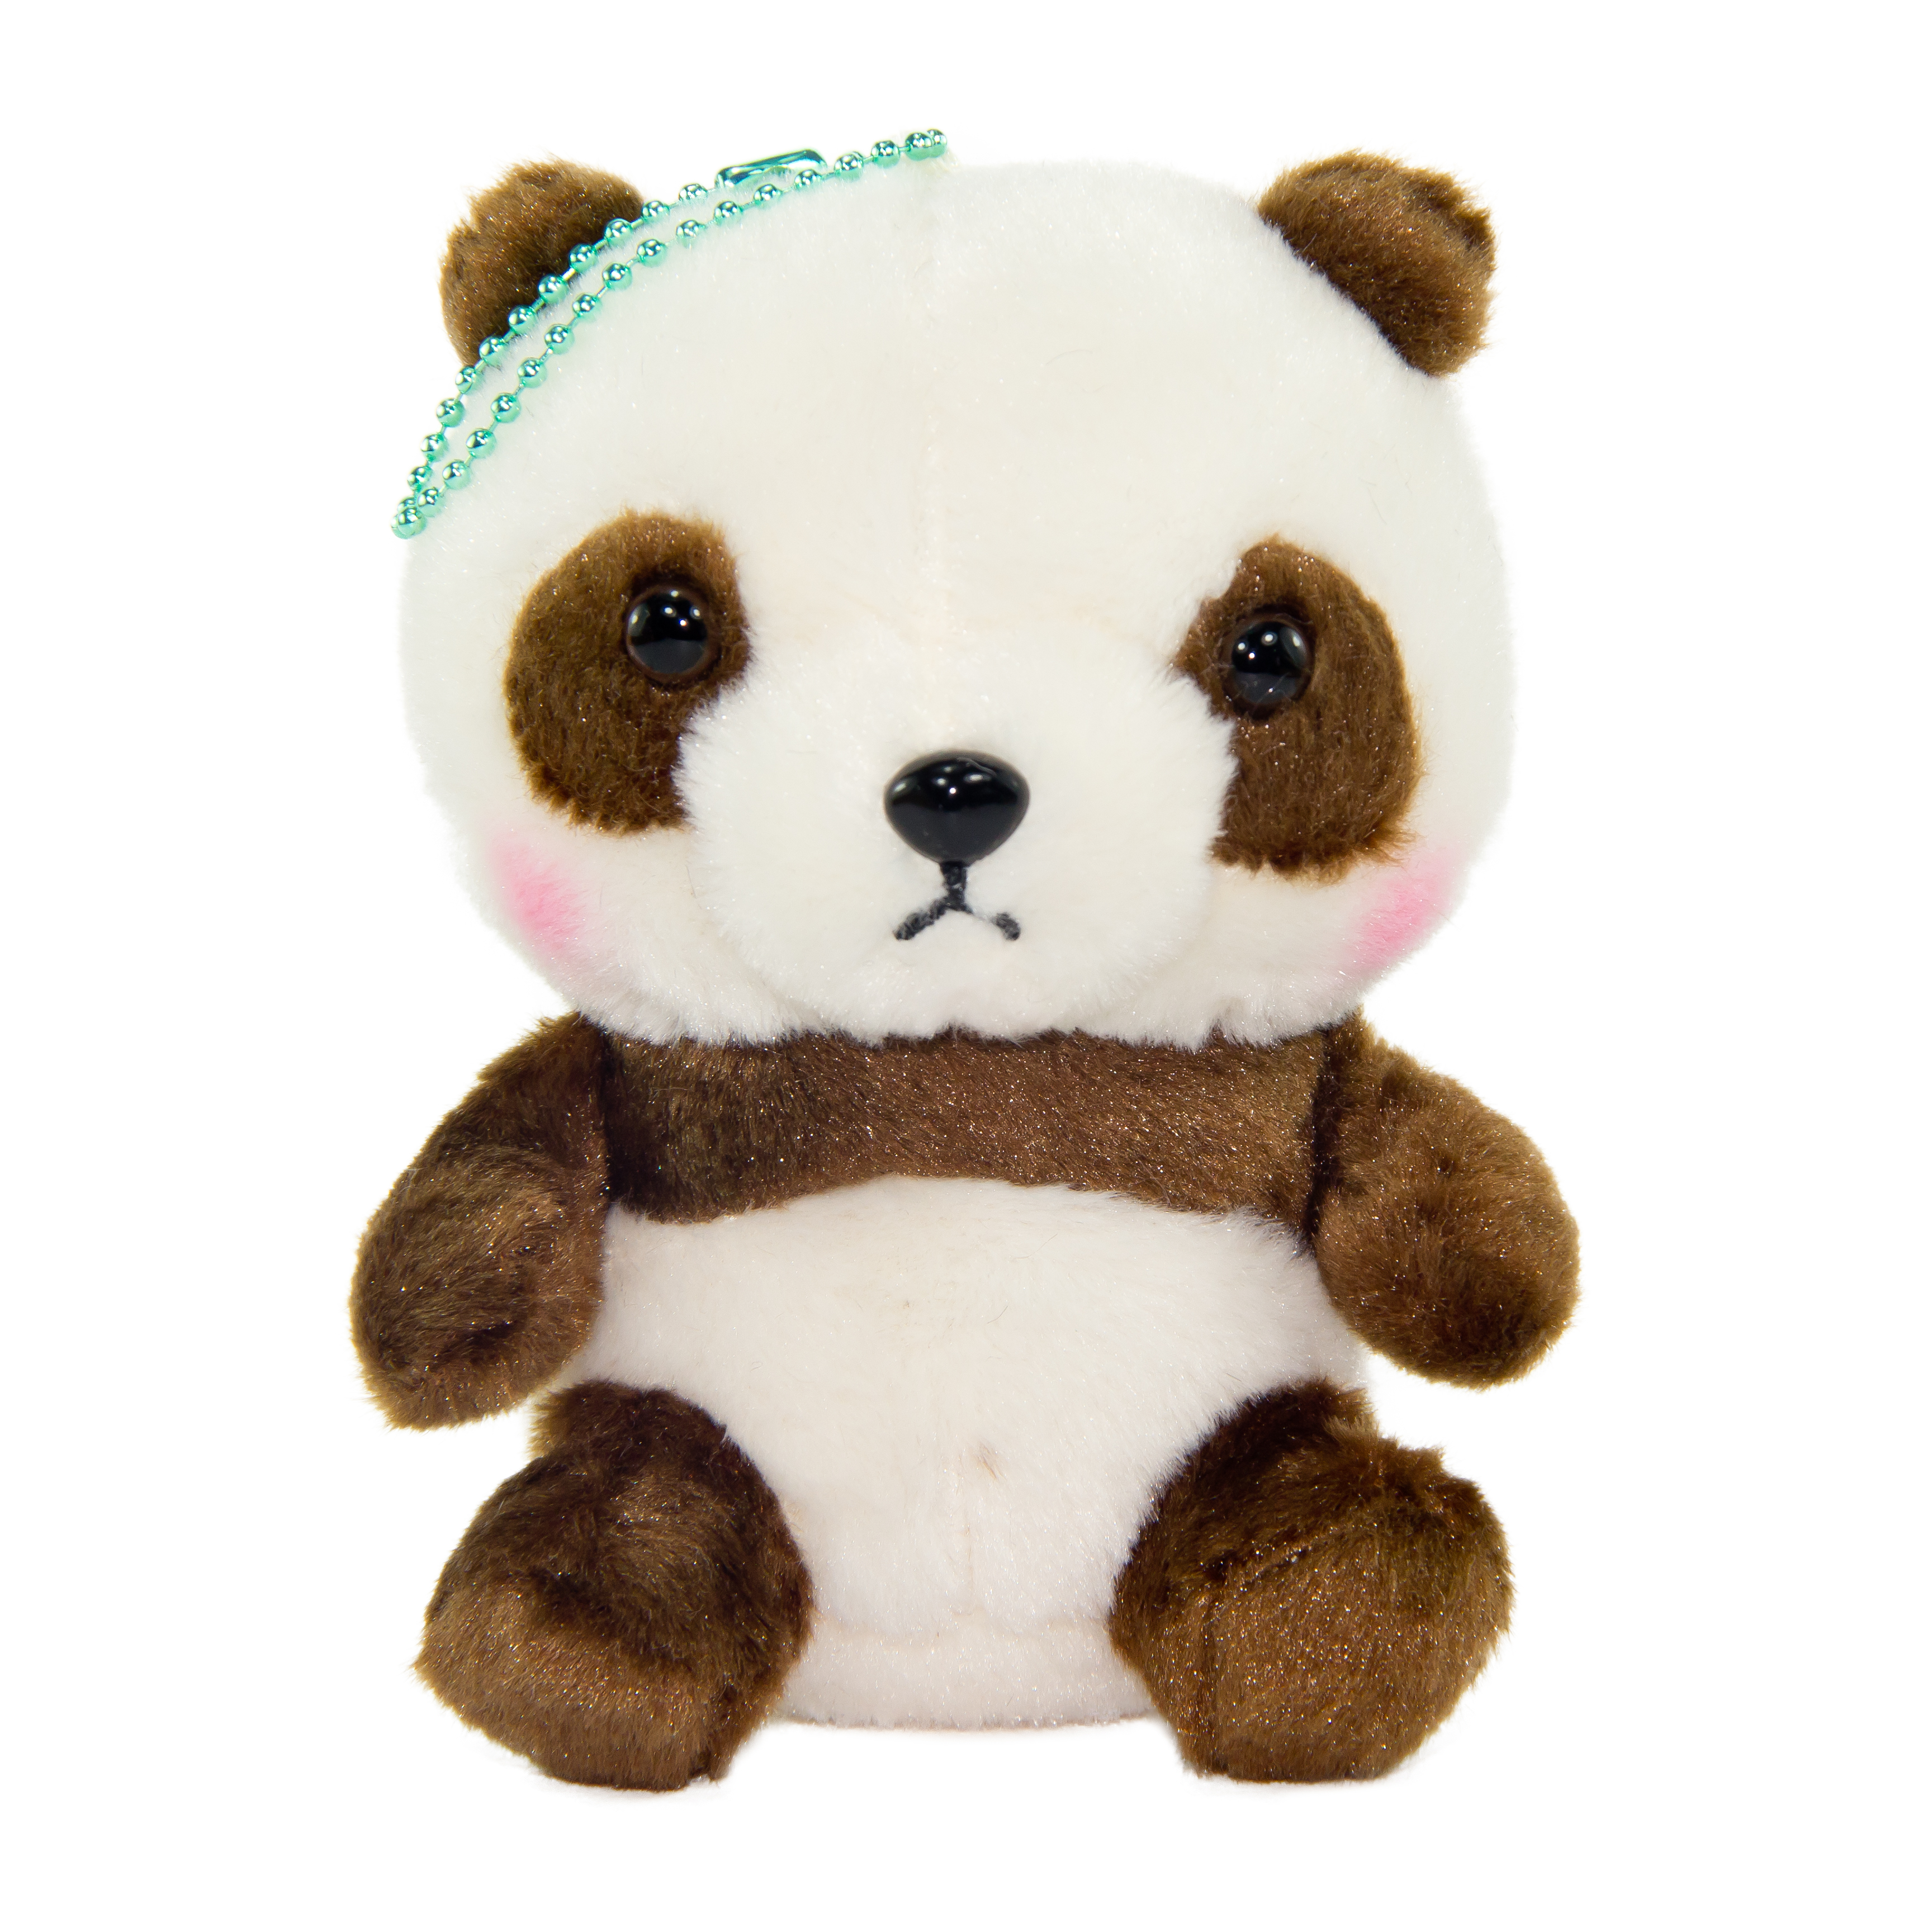 Plush Panda, Amuse, Honwaka Panda Baby, Chocolate Milk, Brown / White, 5 Inches